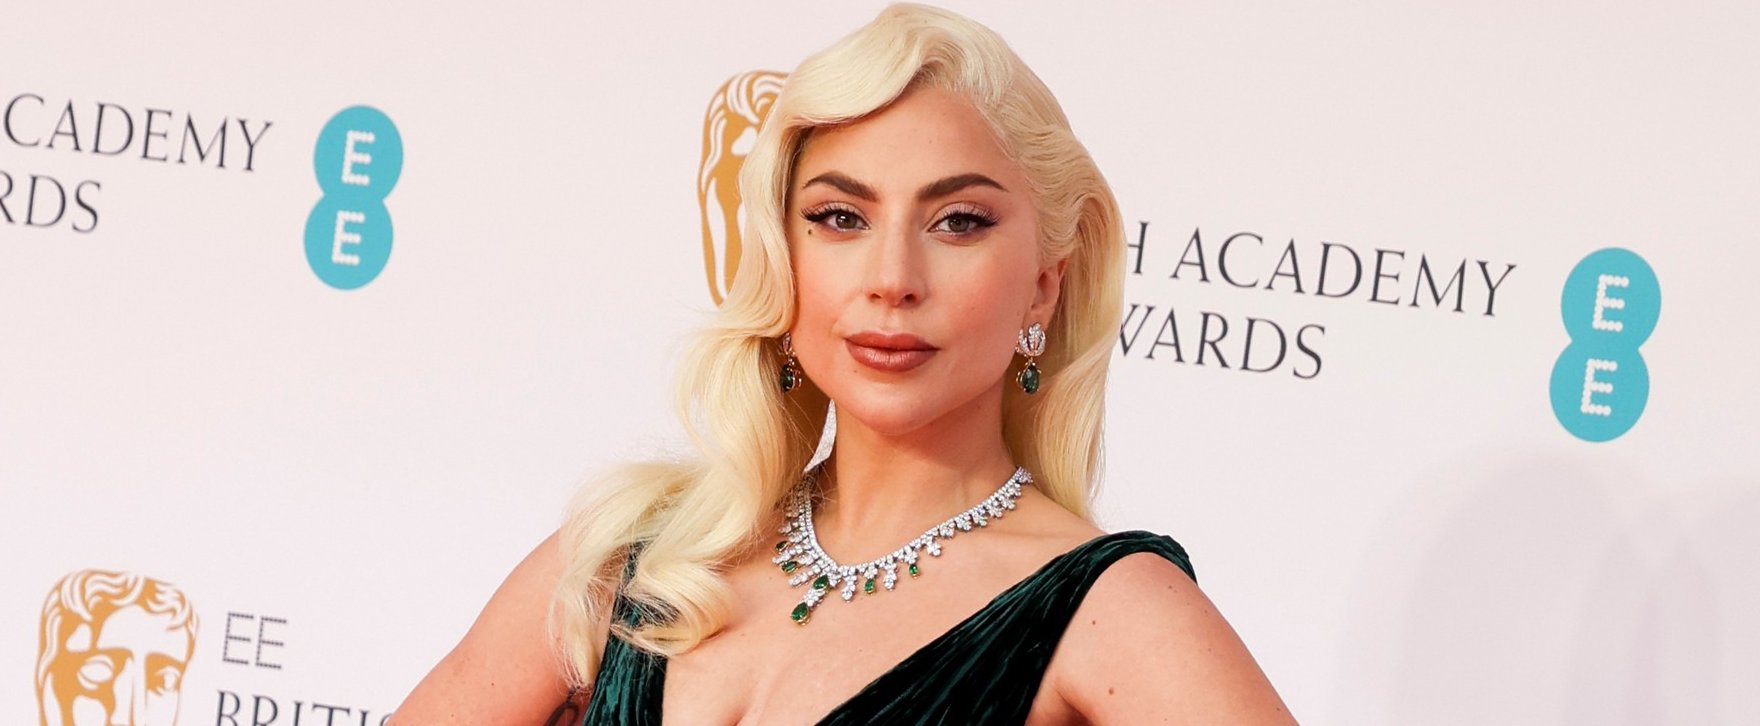 Lady Gaga nudista fenekére senkinek se lesz pókerarca, de Sofia Vergara is elővette a vadmacska énjét – válogatás